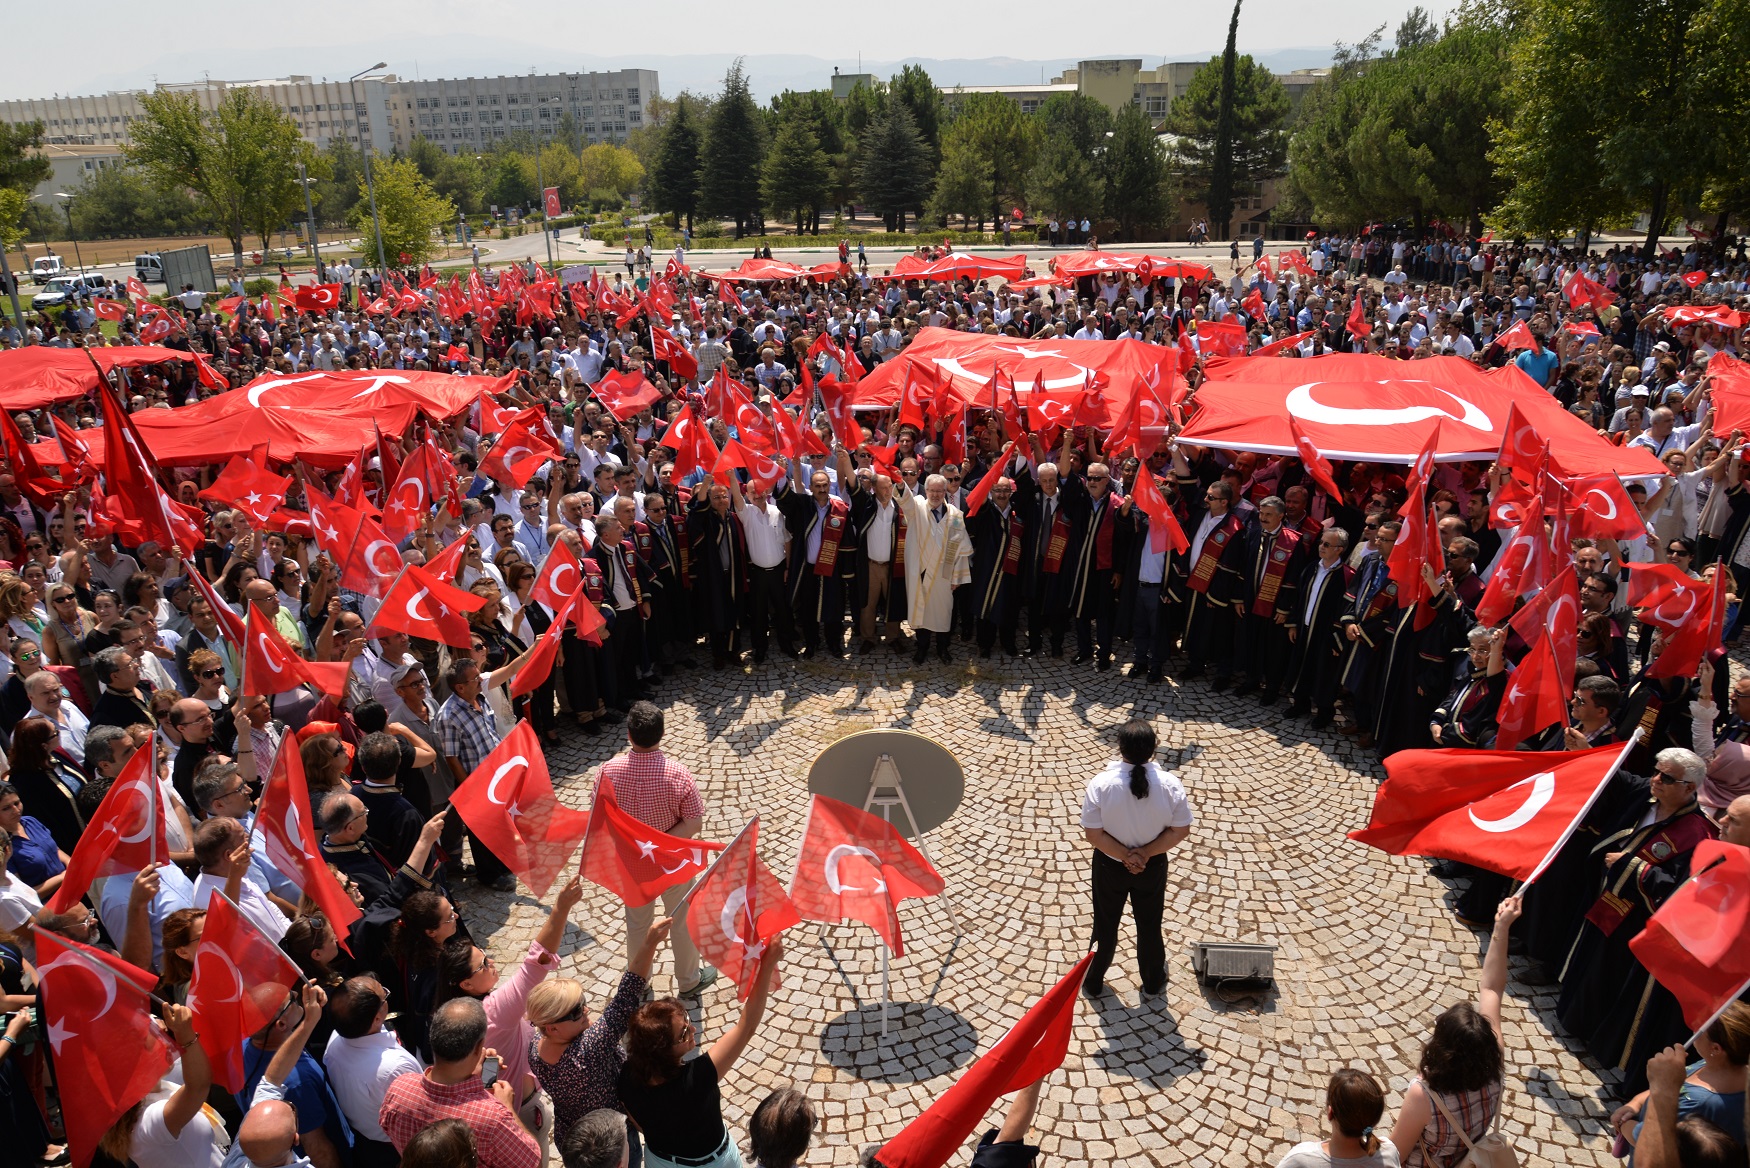  Uludağ Üniversitesi’nden FETÖ/PDY terörünü lanetleme yürüyüşü 